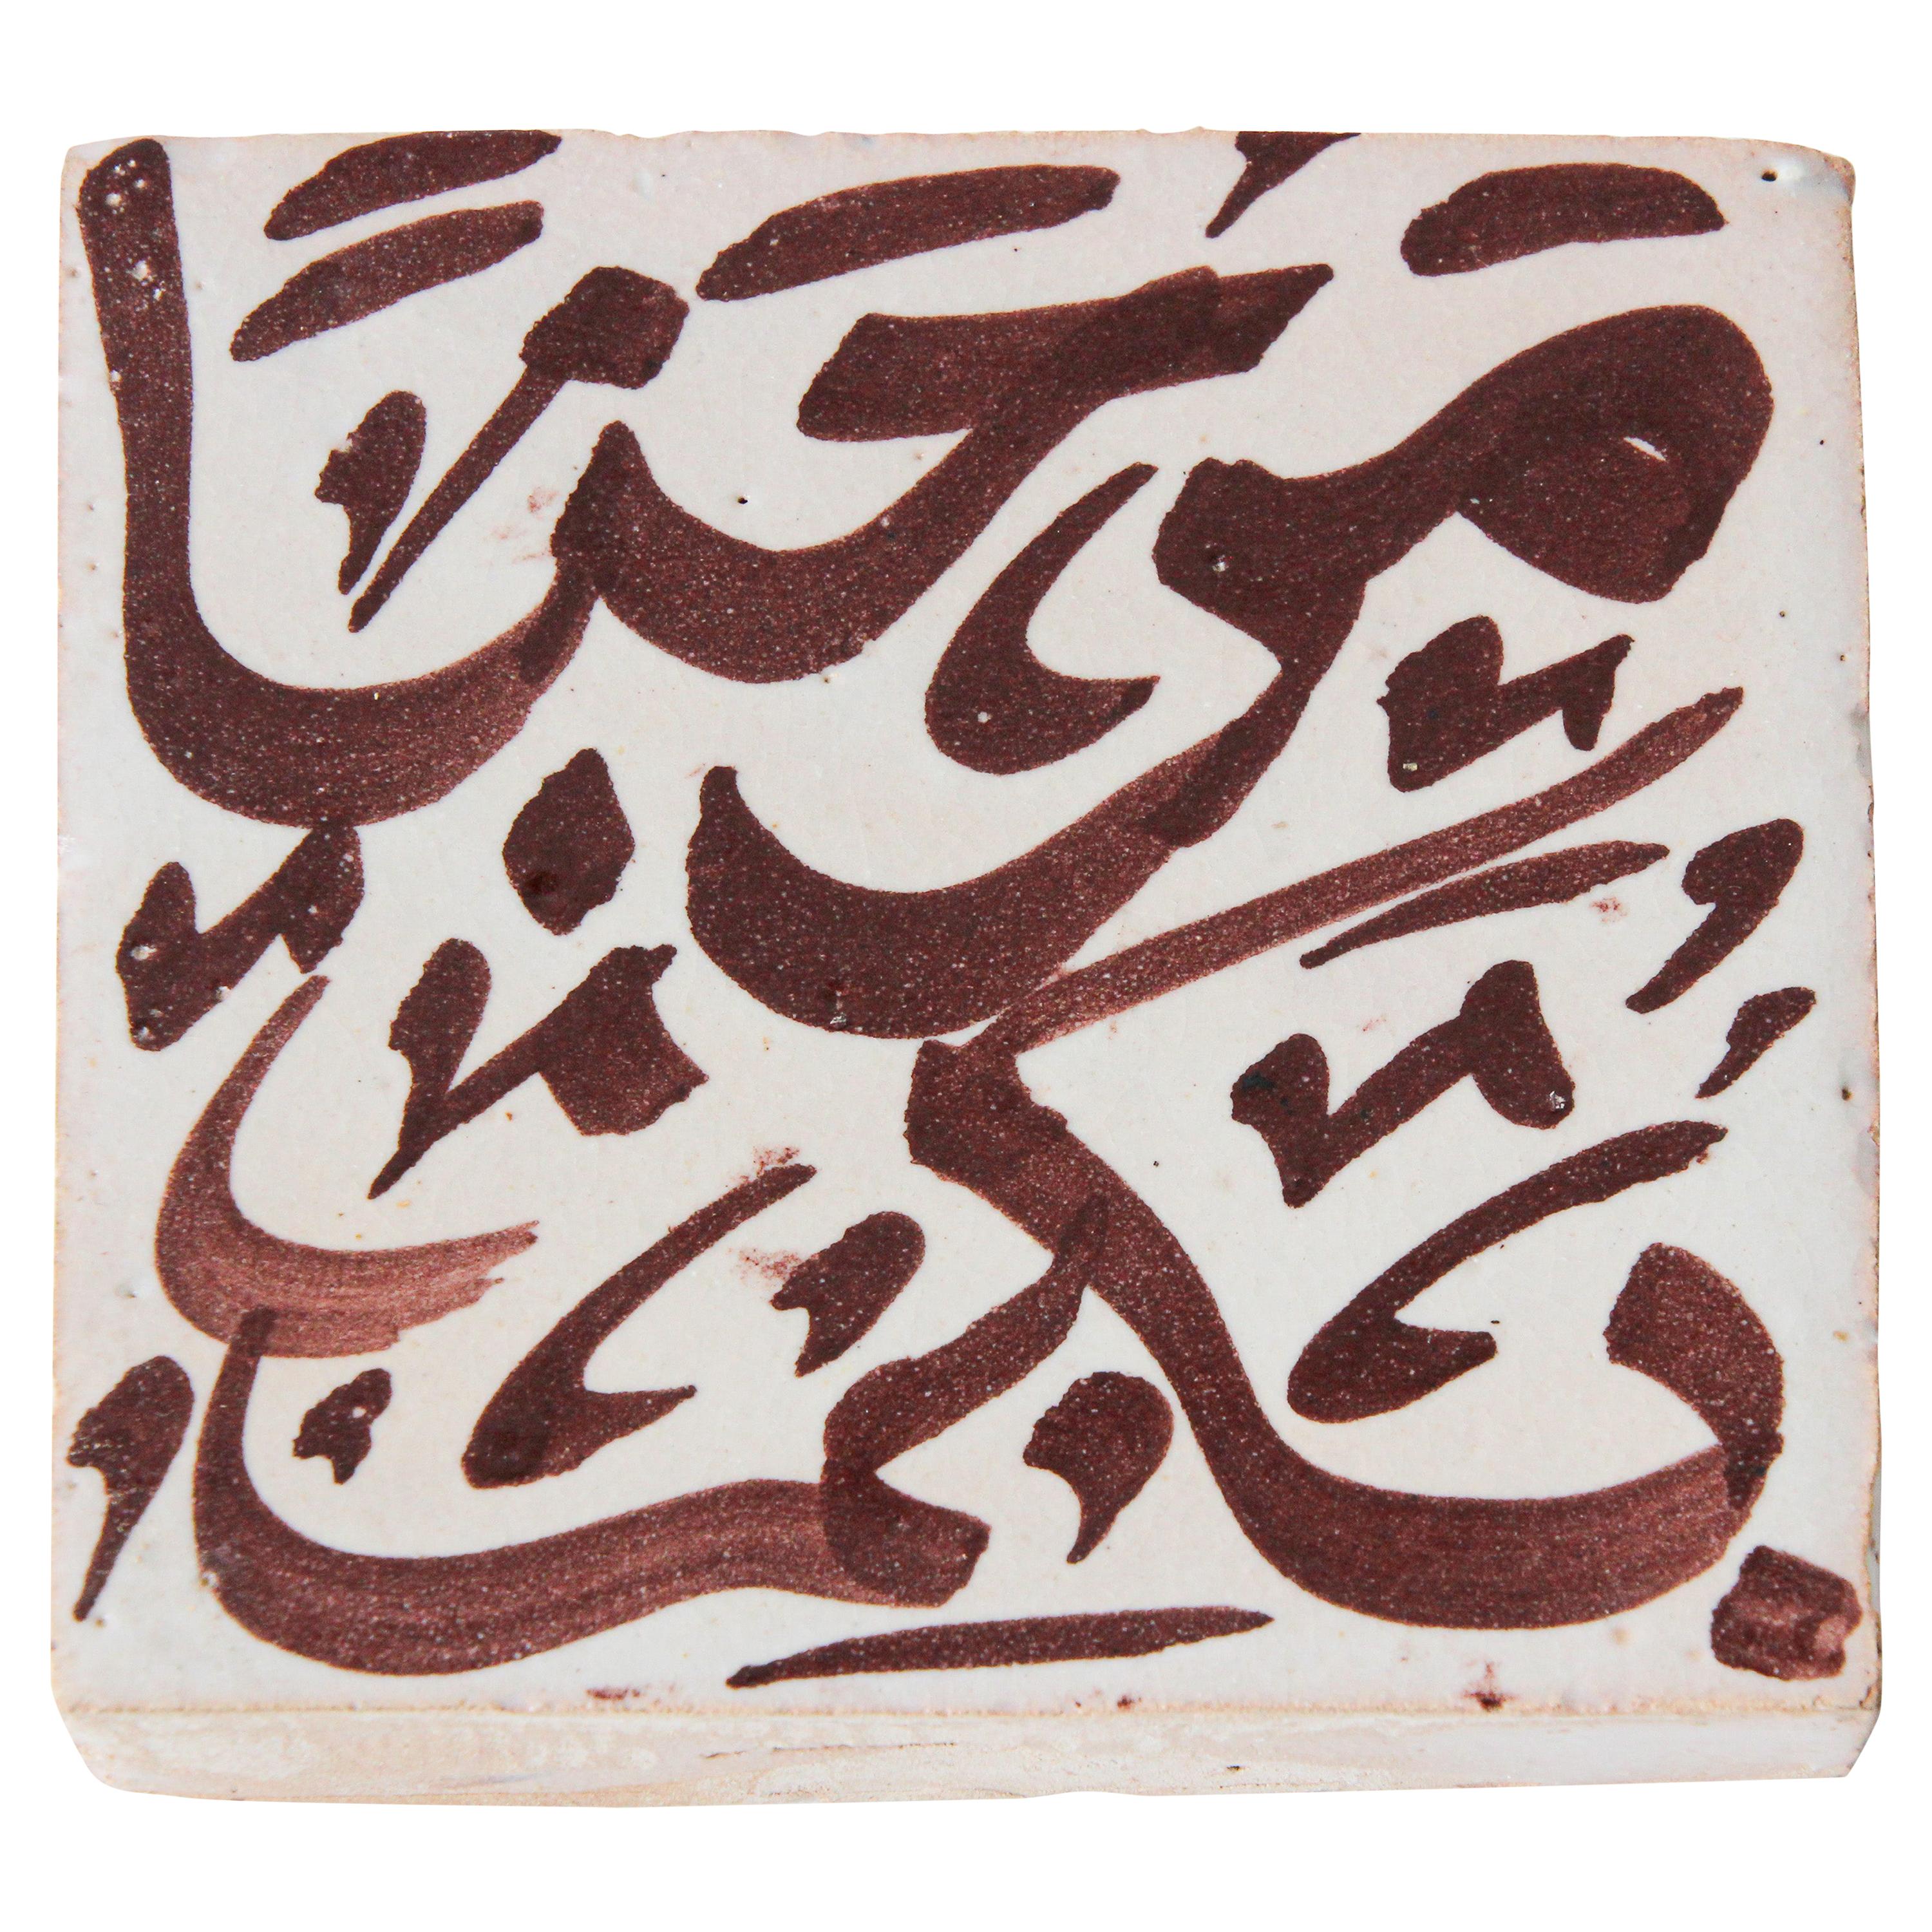 Moorish Ceramic Tile with Arabic Writing in Brown